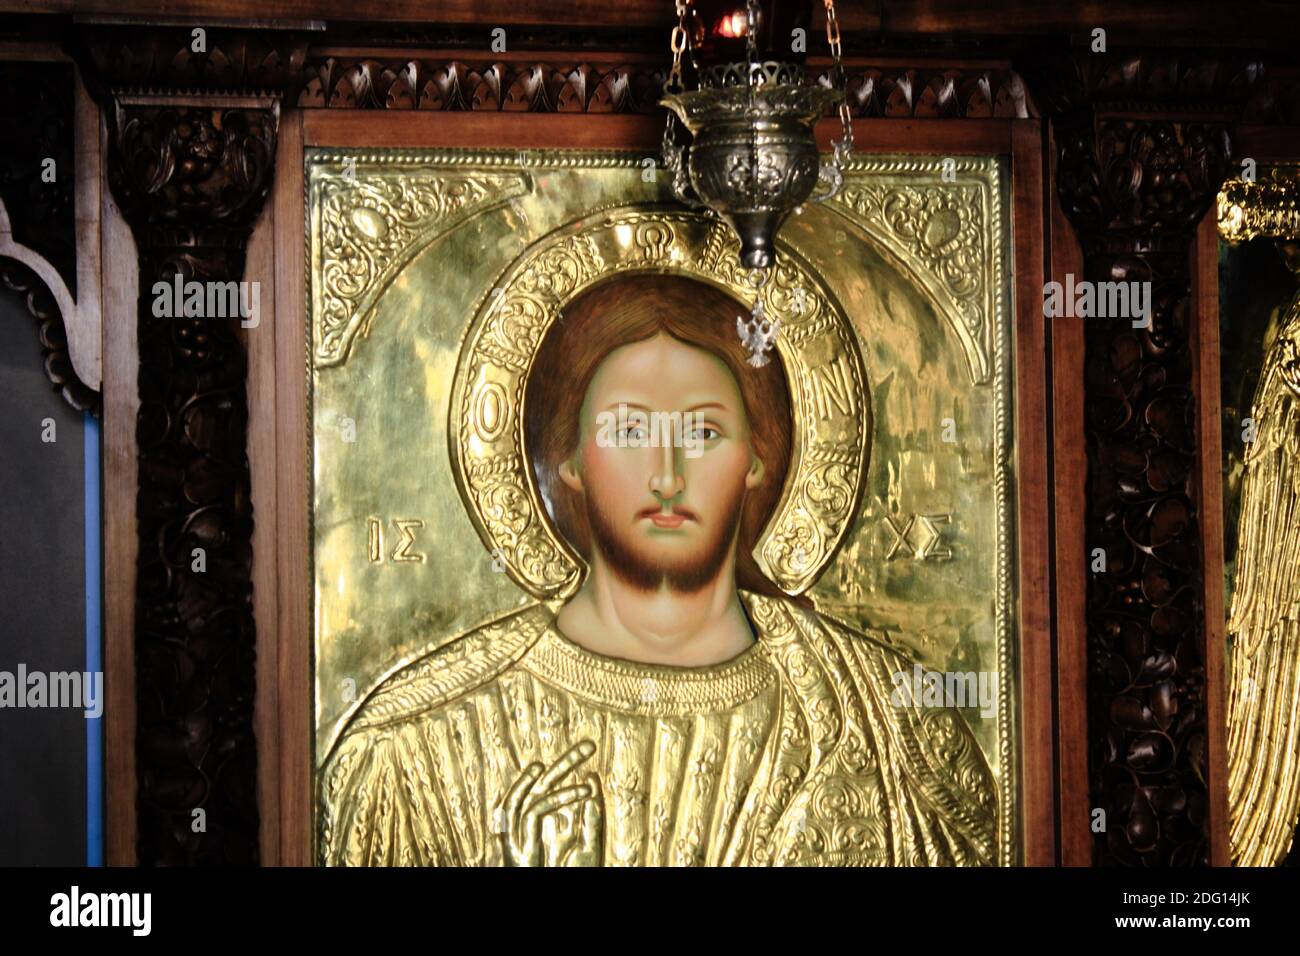 Icona di Gesù Cristo artigianale e coperto d'oro all'interno di una chiesa cristiana ortodossa ad Atene, Grecia, marzo 12 2020. Foto Stock